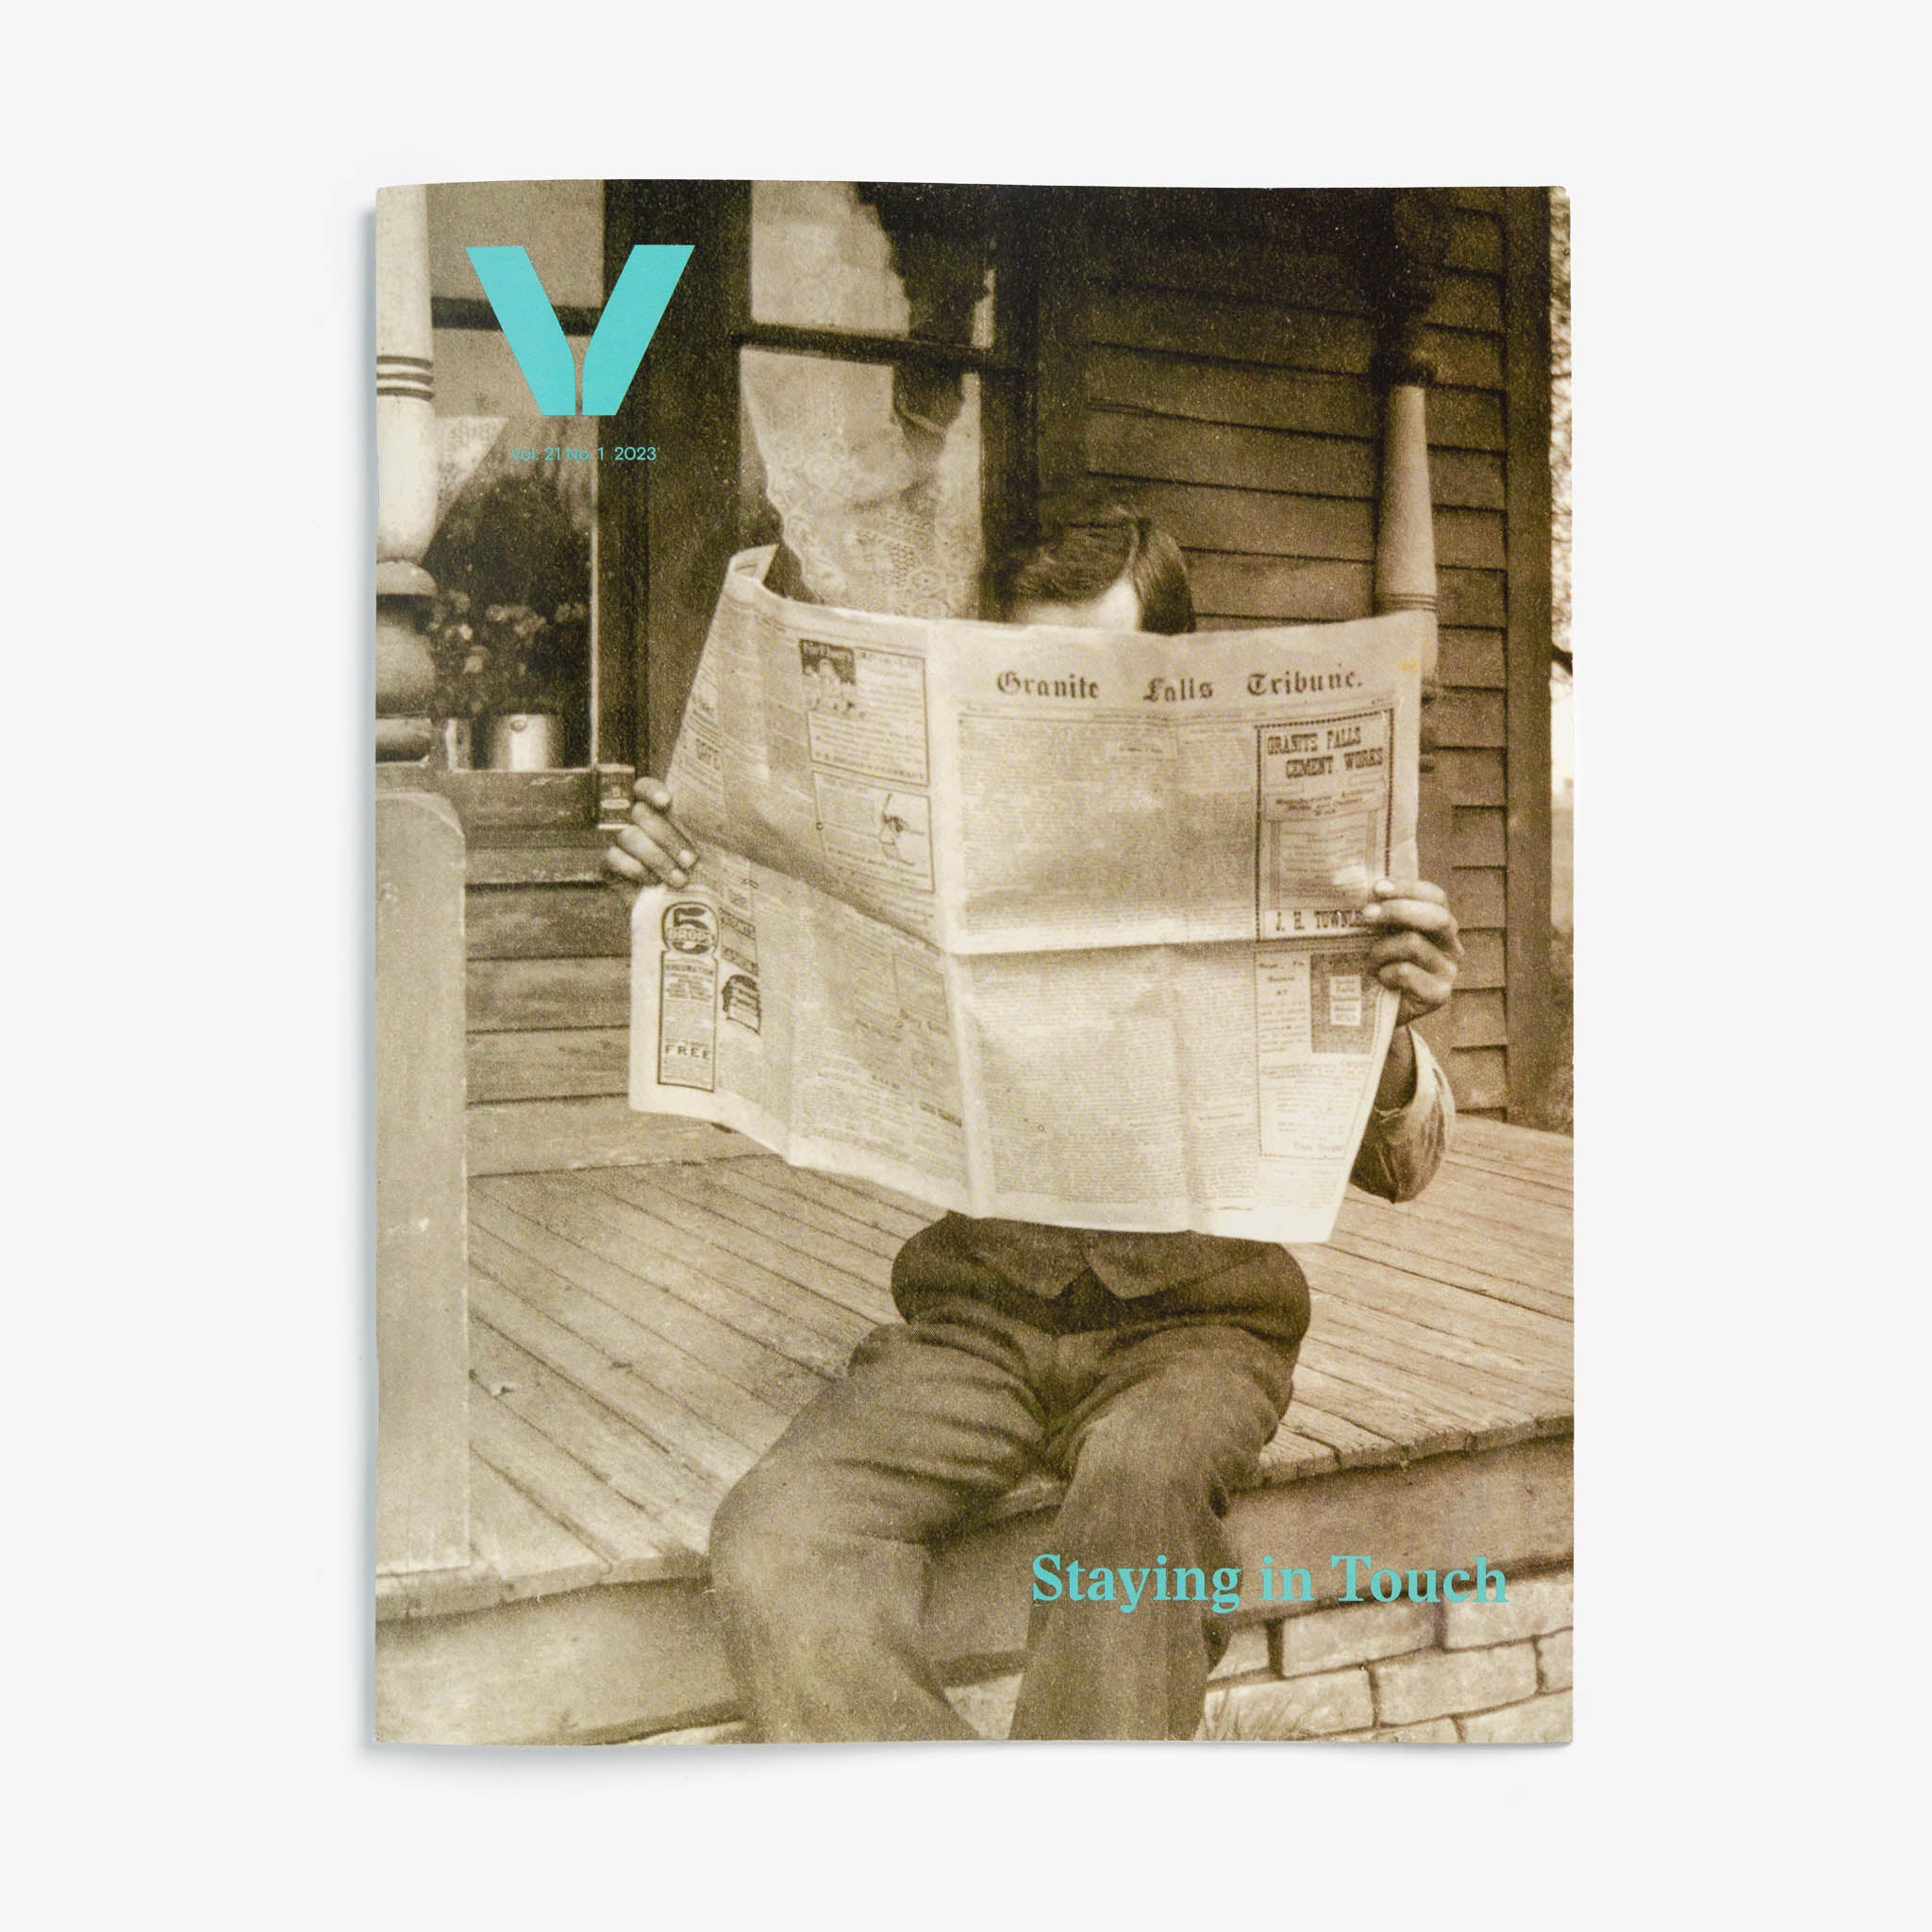 Vesterheim Magazine Vol 21 No. 1 – Staying in Touch